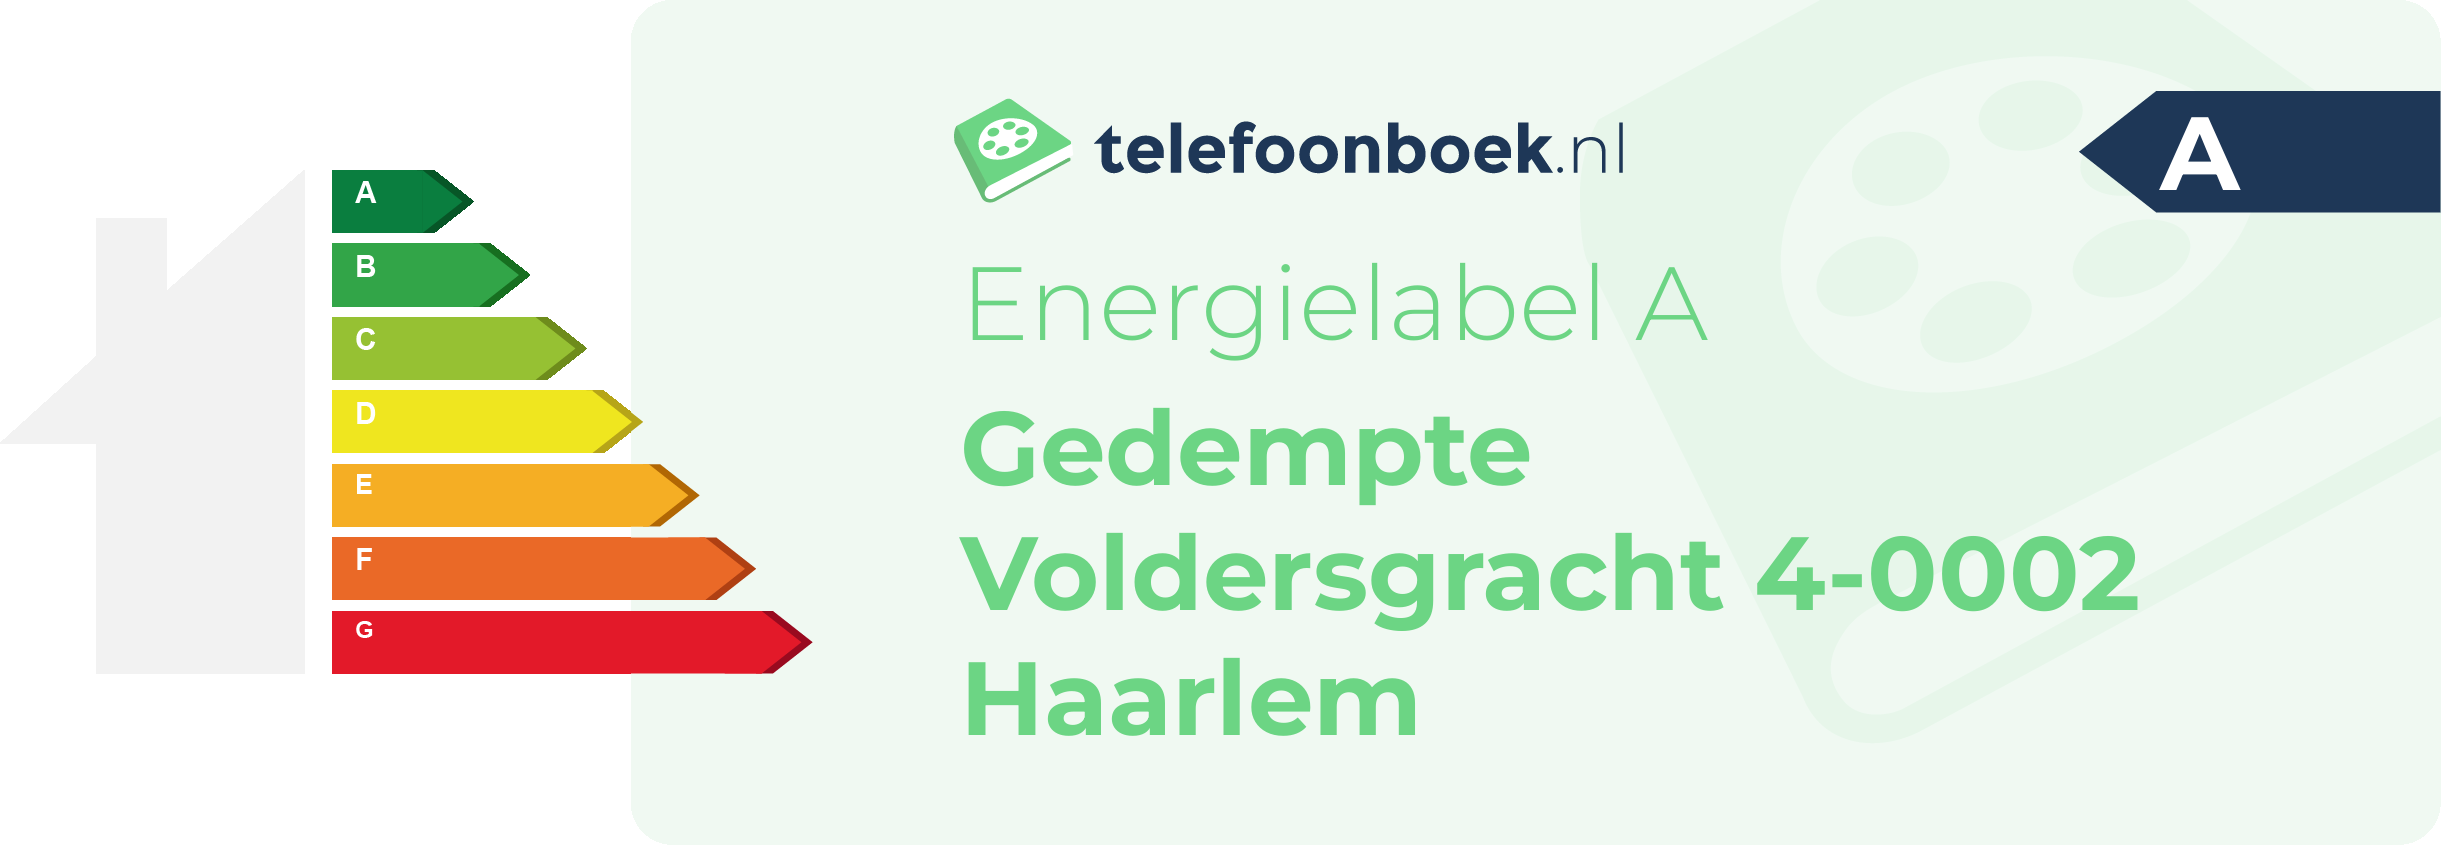 Energielabel Gedempte Voldersgracht 4-0002 Haarlem